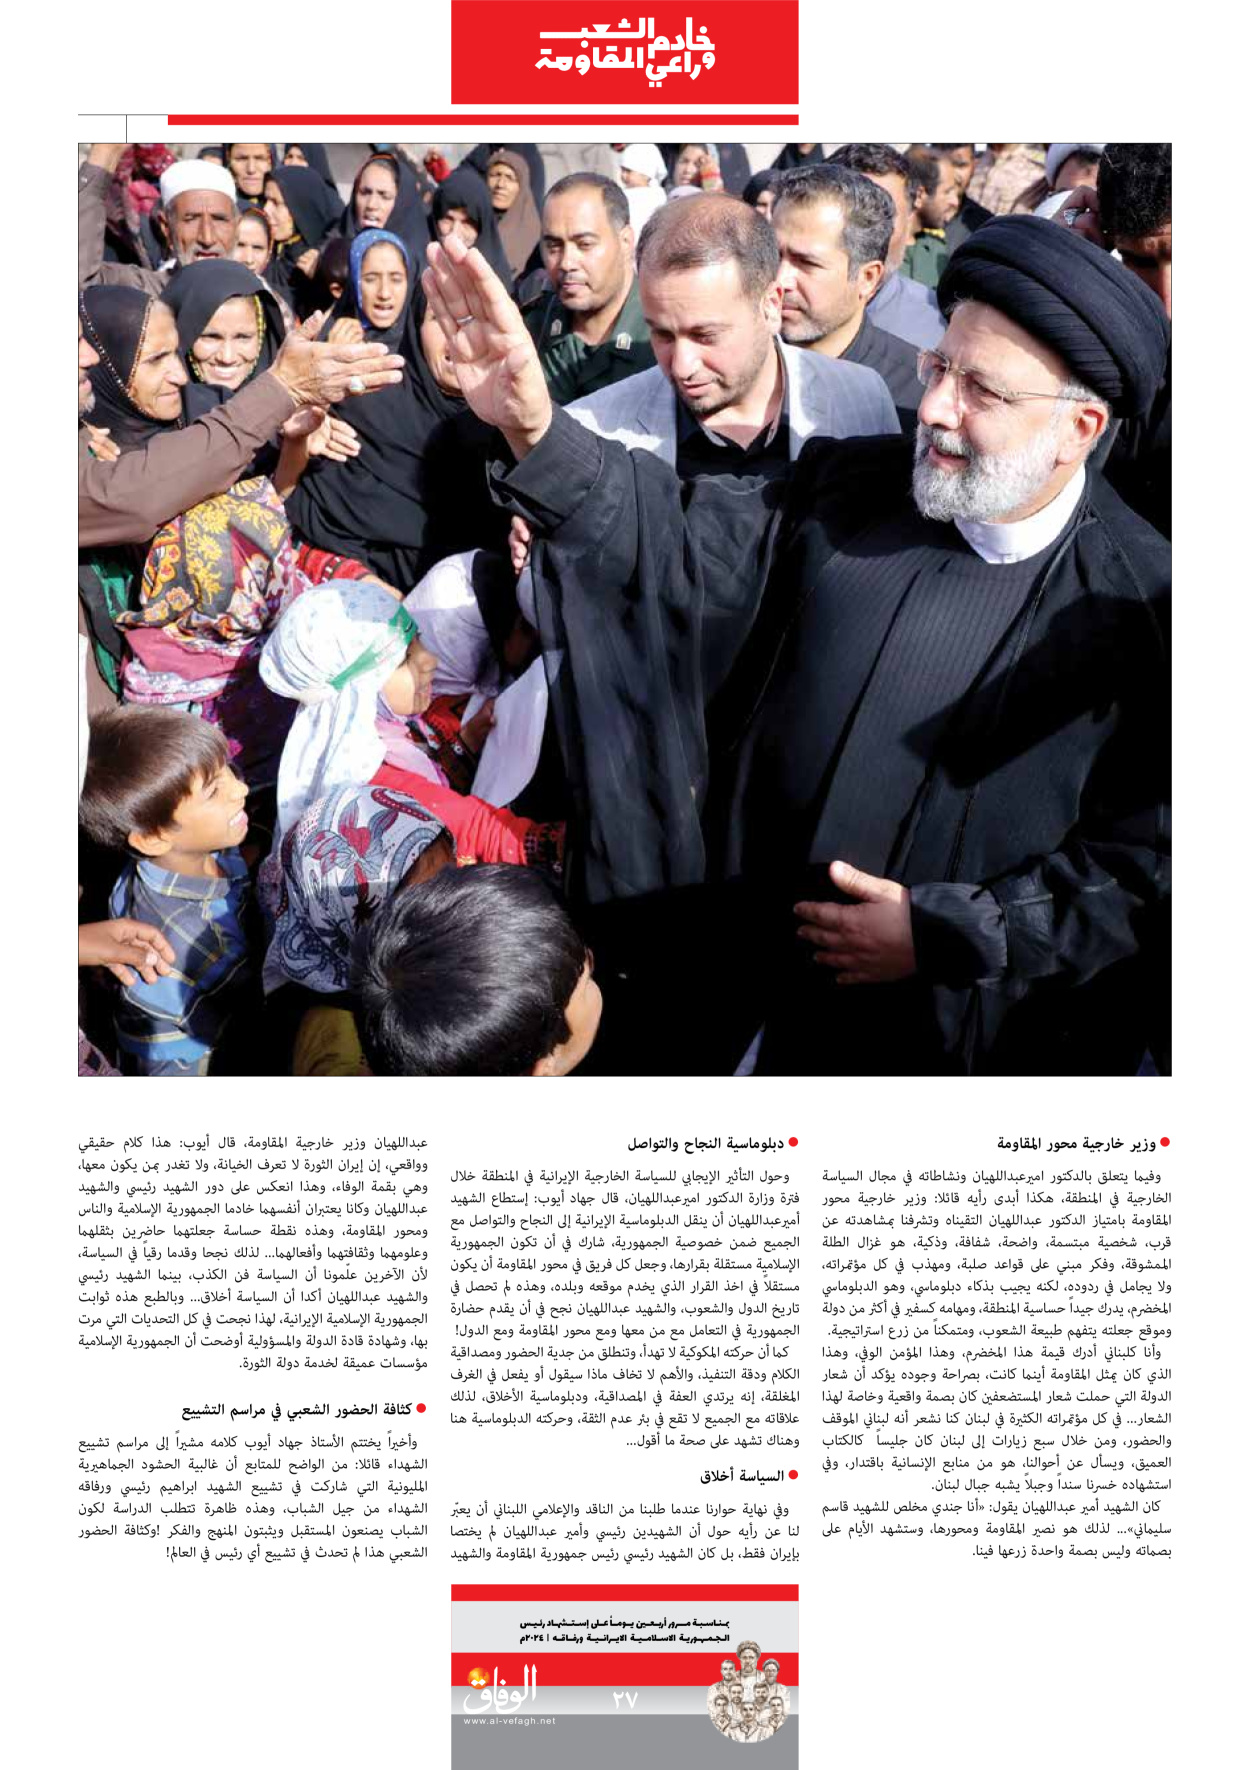 صحیفة ایران الدولیة الوفاق - ملحق ویژه نامه چهلم شهید رییسی - ٢٩ يونيو ٢٠٢٤ - الصفحة ۲۷